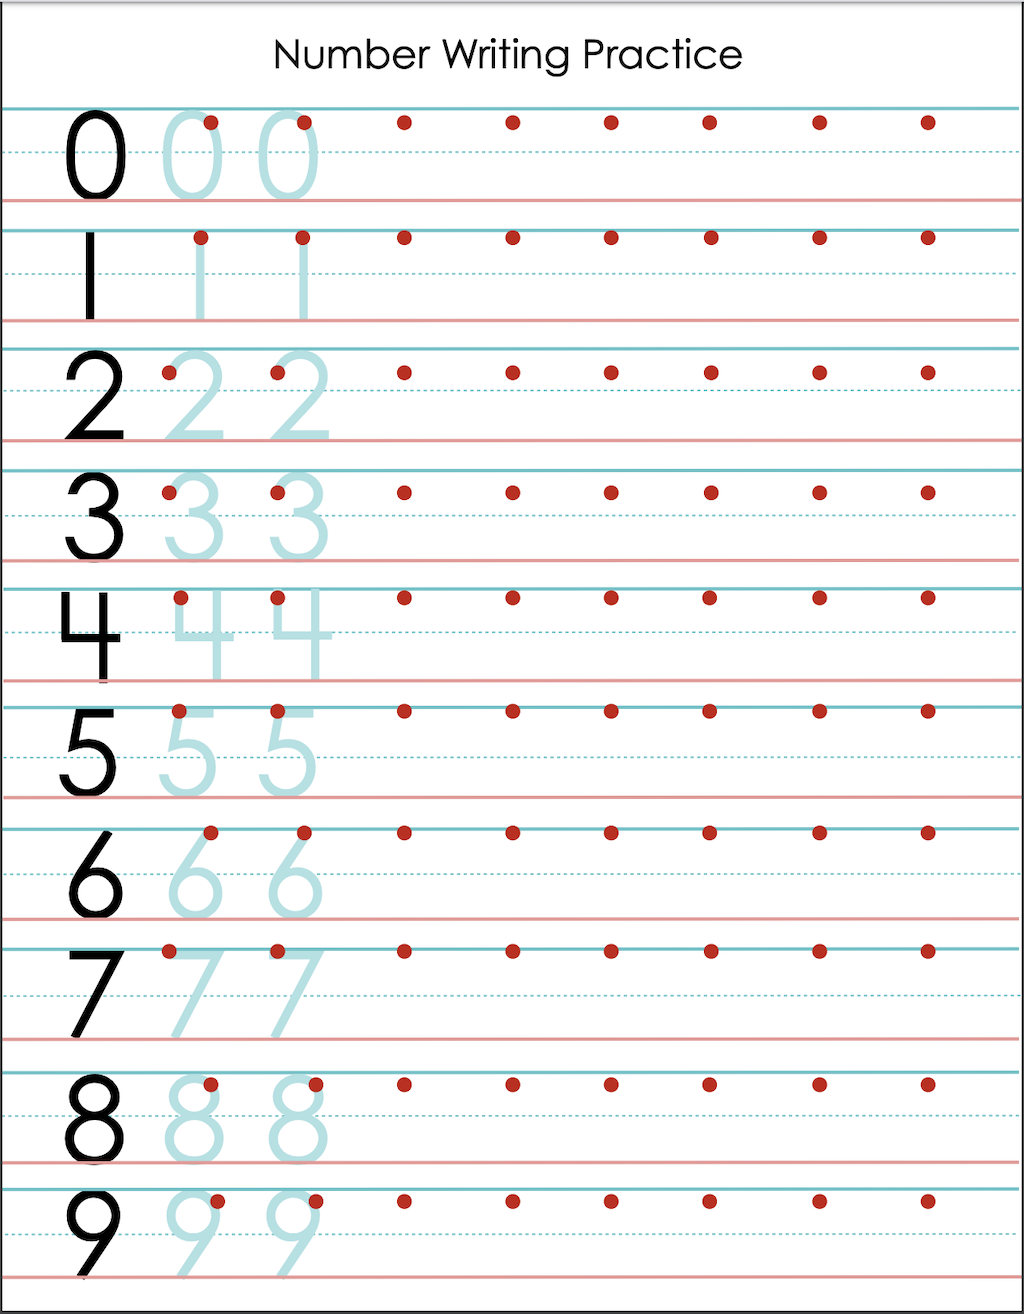 Number Writing Practice Sheet (Free Printable) Flanders